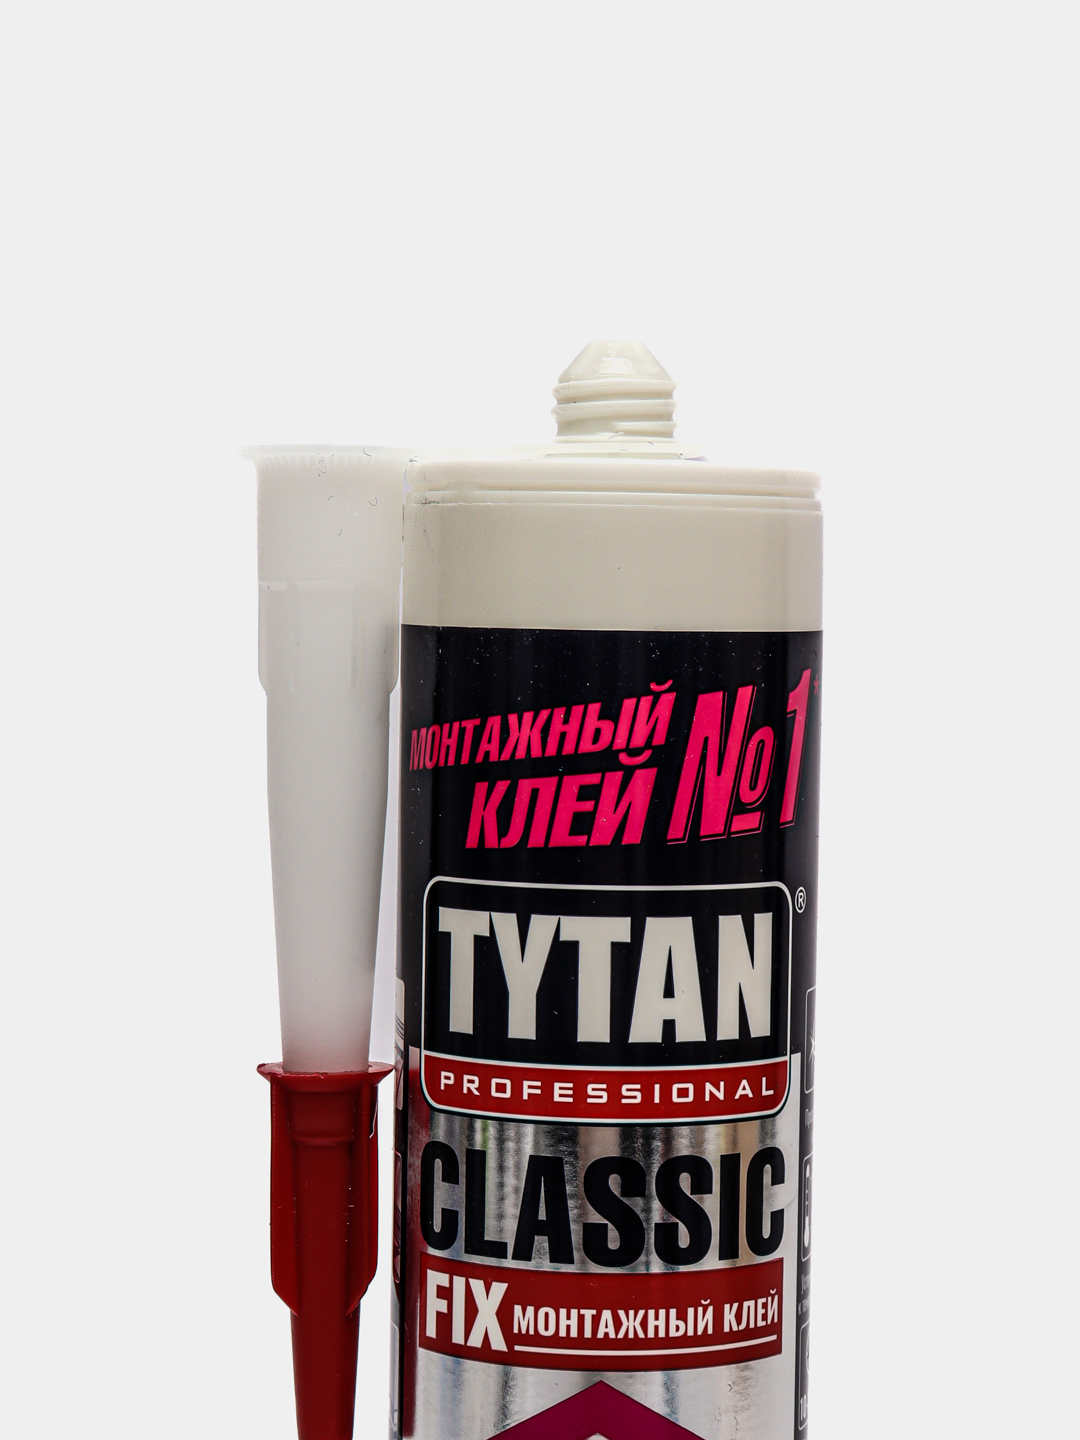 Монтажный клей Tytan Classic Fix прозрачный 310 мл. Клей монтажный Rich Fix прозрачный 310мл. Tytan professional клей монтажный Classic Fix каучуковый прозрачный 310мл 62949. Жидкие гвозди каучуковые. Tytan classic fix 310 мл